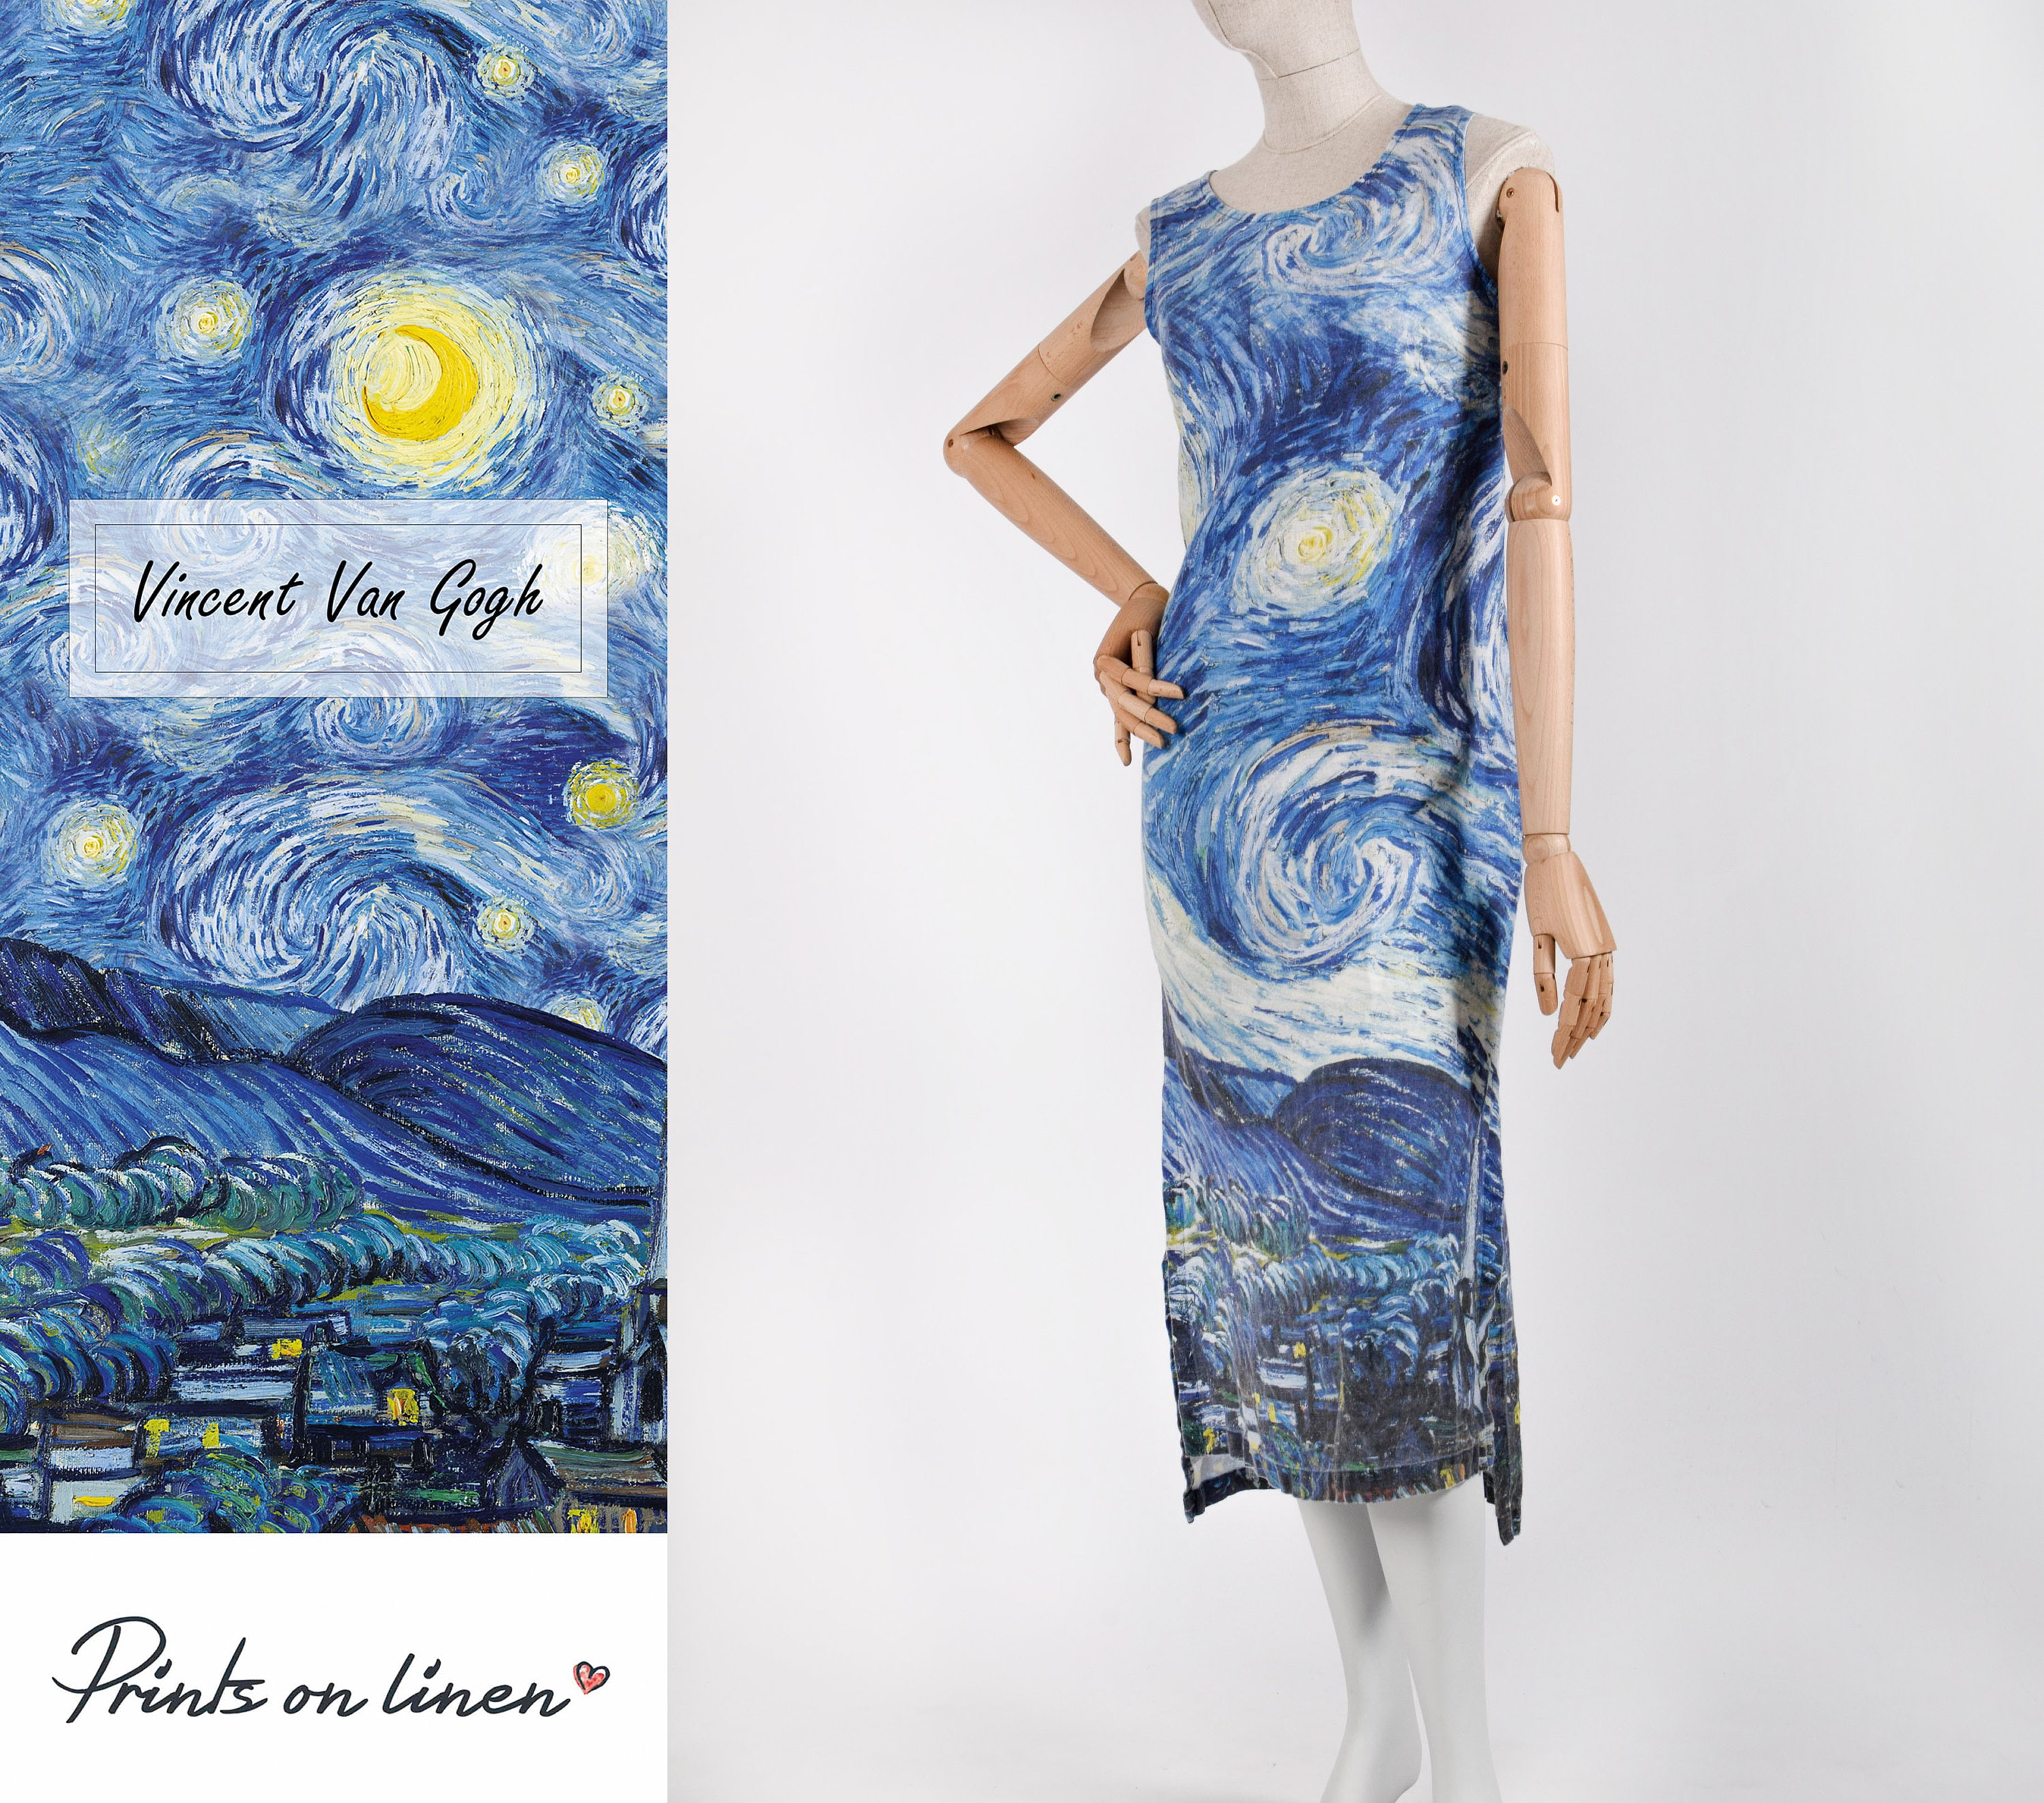 HØGHHEIM 1889 Kimono Accappatoio La notte stellata Accappatoio Abbigliamento Abbigliamento genere neutro per adulti Pigiami e vestaglie Vestaglie Stampa digitale Accappatoio Vincent van Gogh 